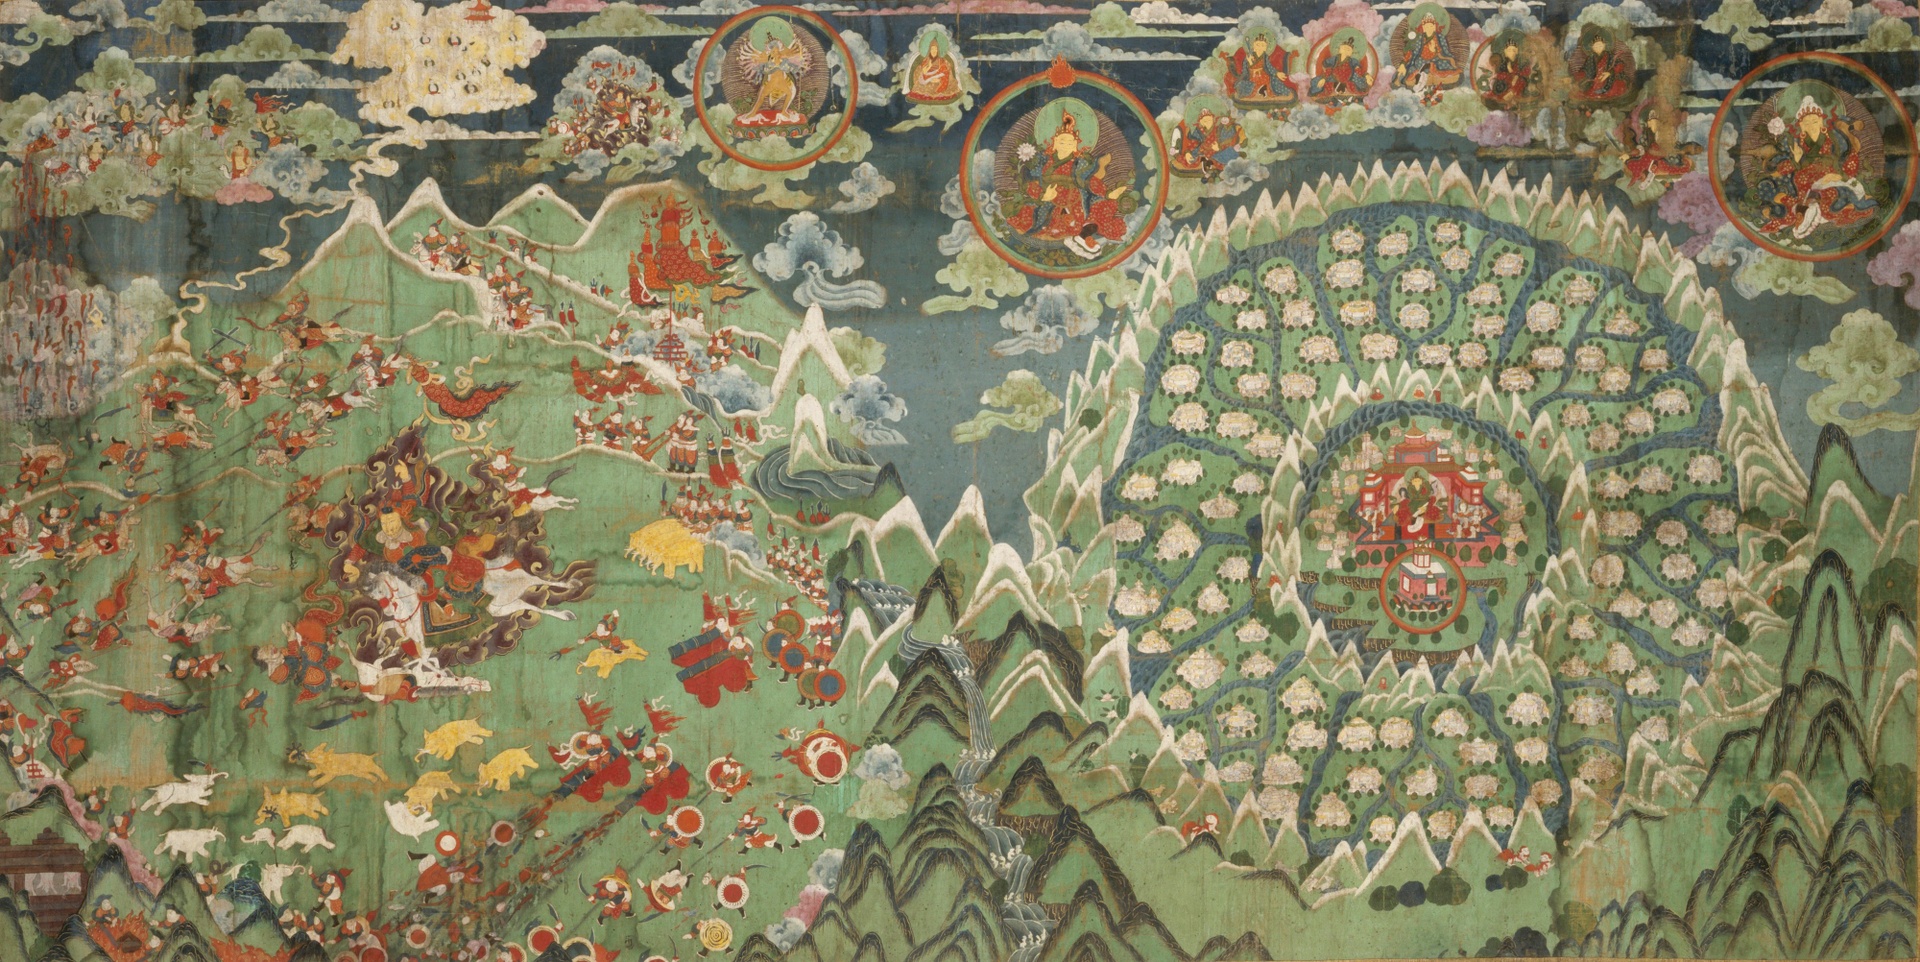 Vương quốc dưới lòng đất ở Tây Tạng khiến Hitler ám ảnh - Ảnh 2.